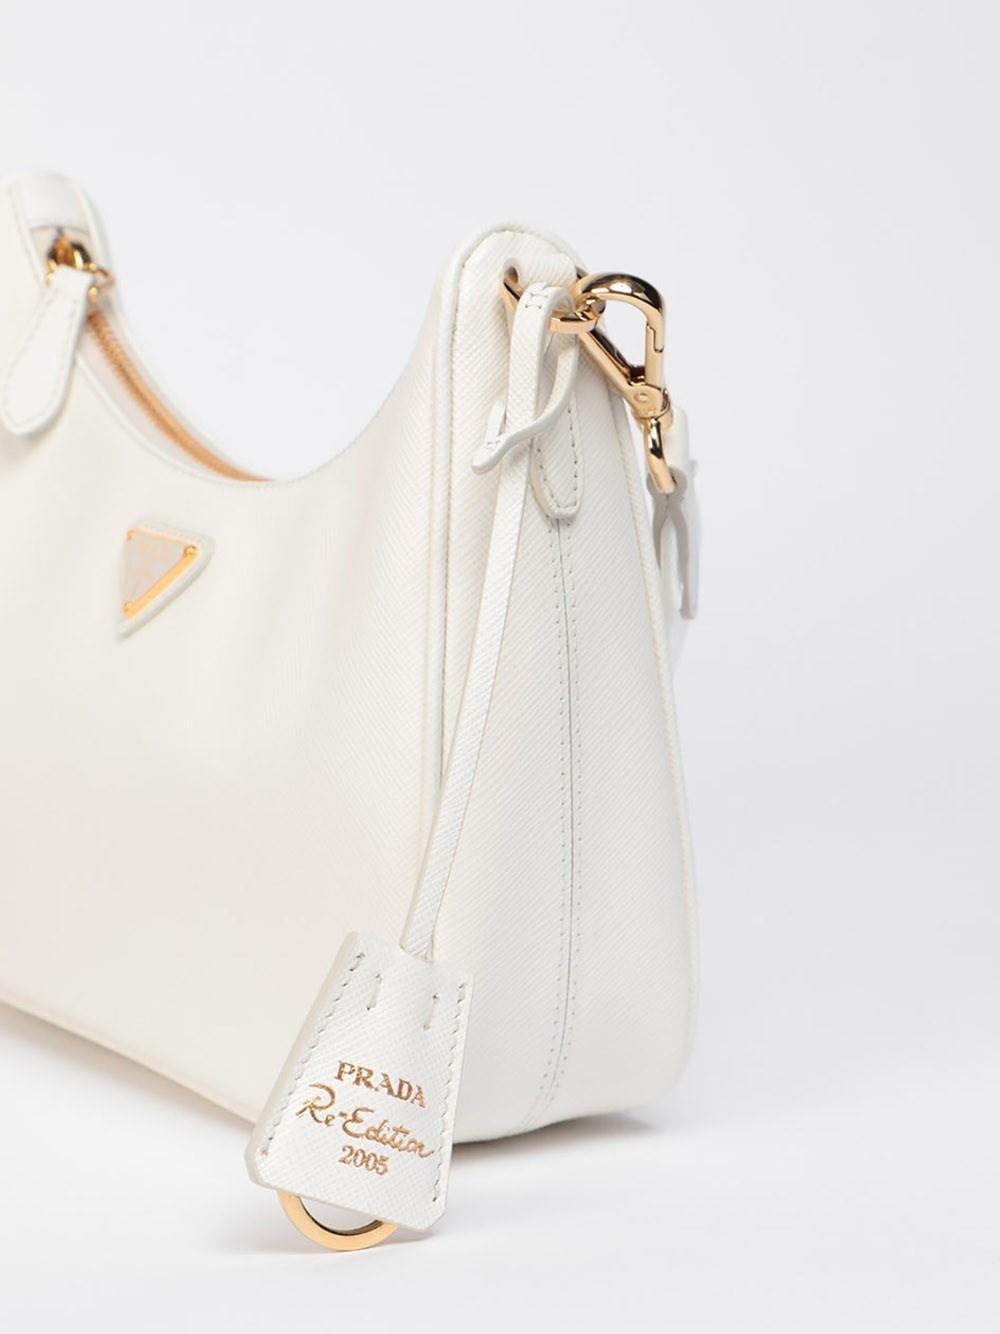 Prada Saffiano Lux Re-Edition 2005 Shoulder Bag - White Crossbody Bags,  Handbags - PRA883788